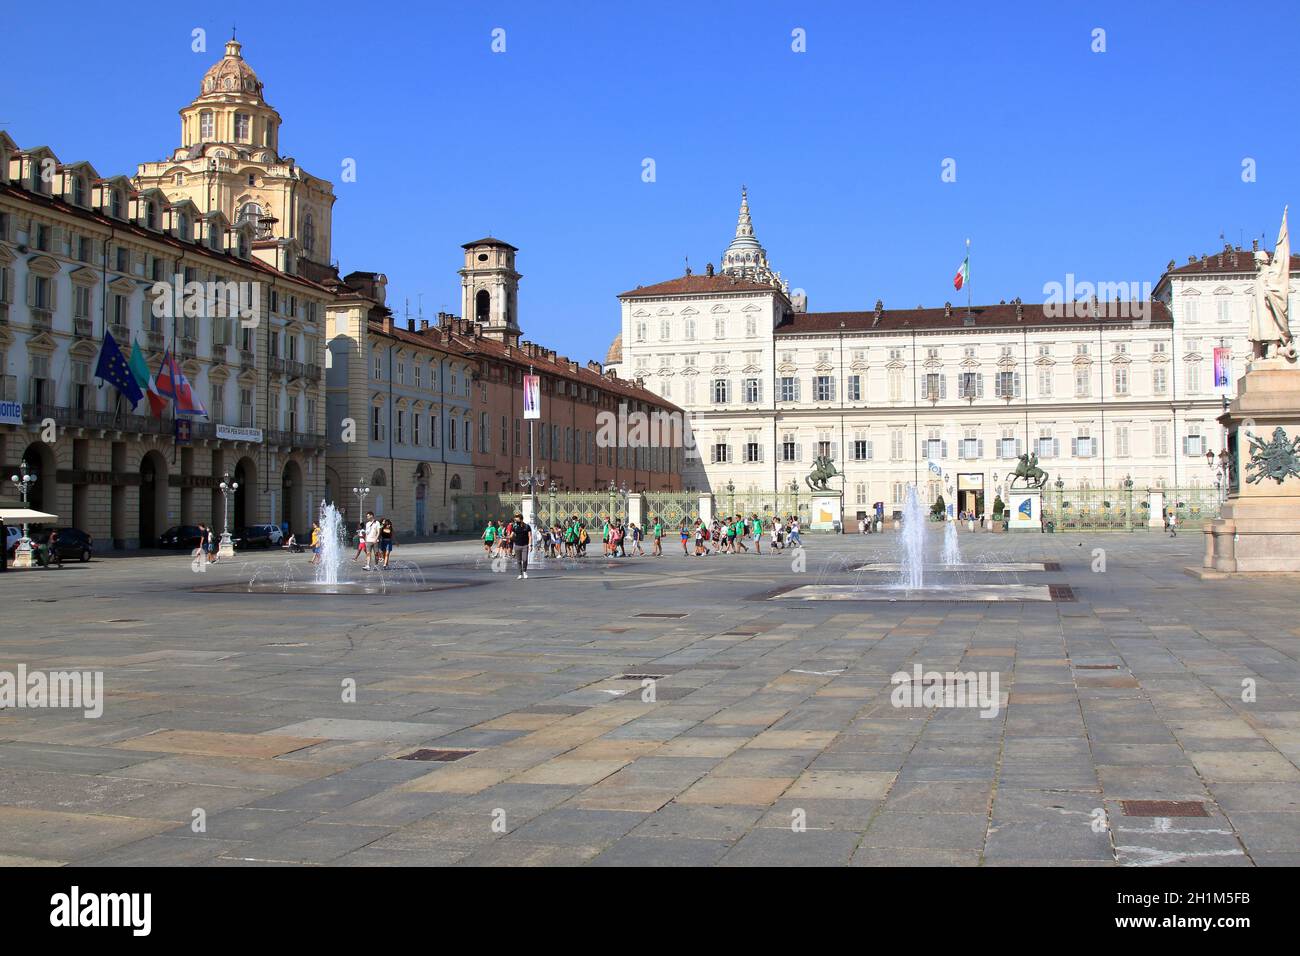 Piazza del Castello, Torino. Italia - settembre 2020: Vista panoramica della piazza e della facciata del Palazzo reale di Savoia. Foto di alta qualità Foto Stock